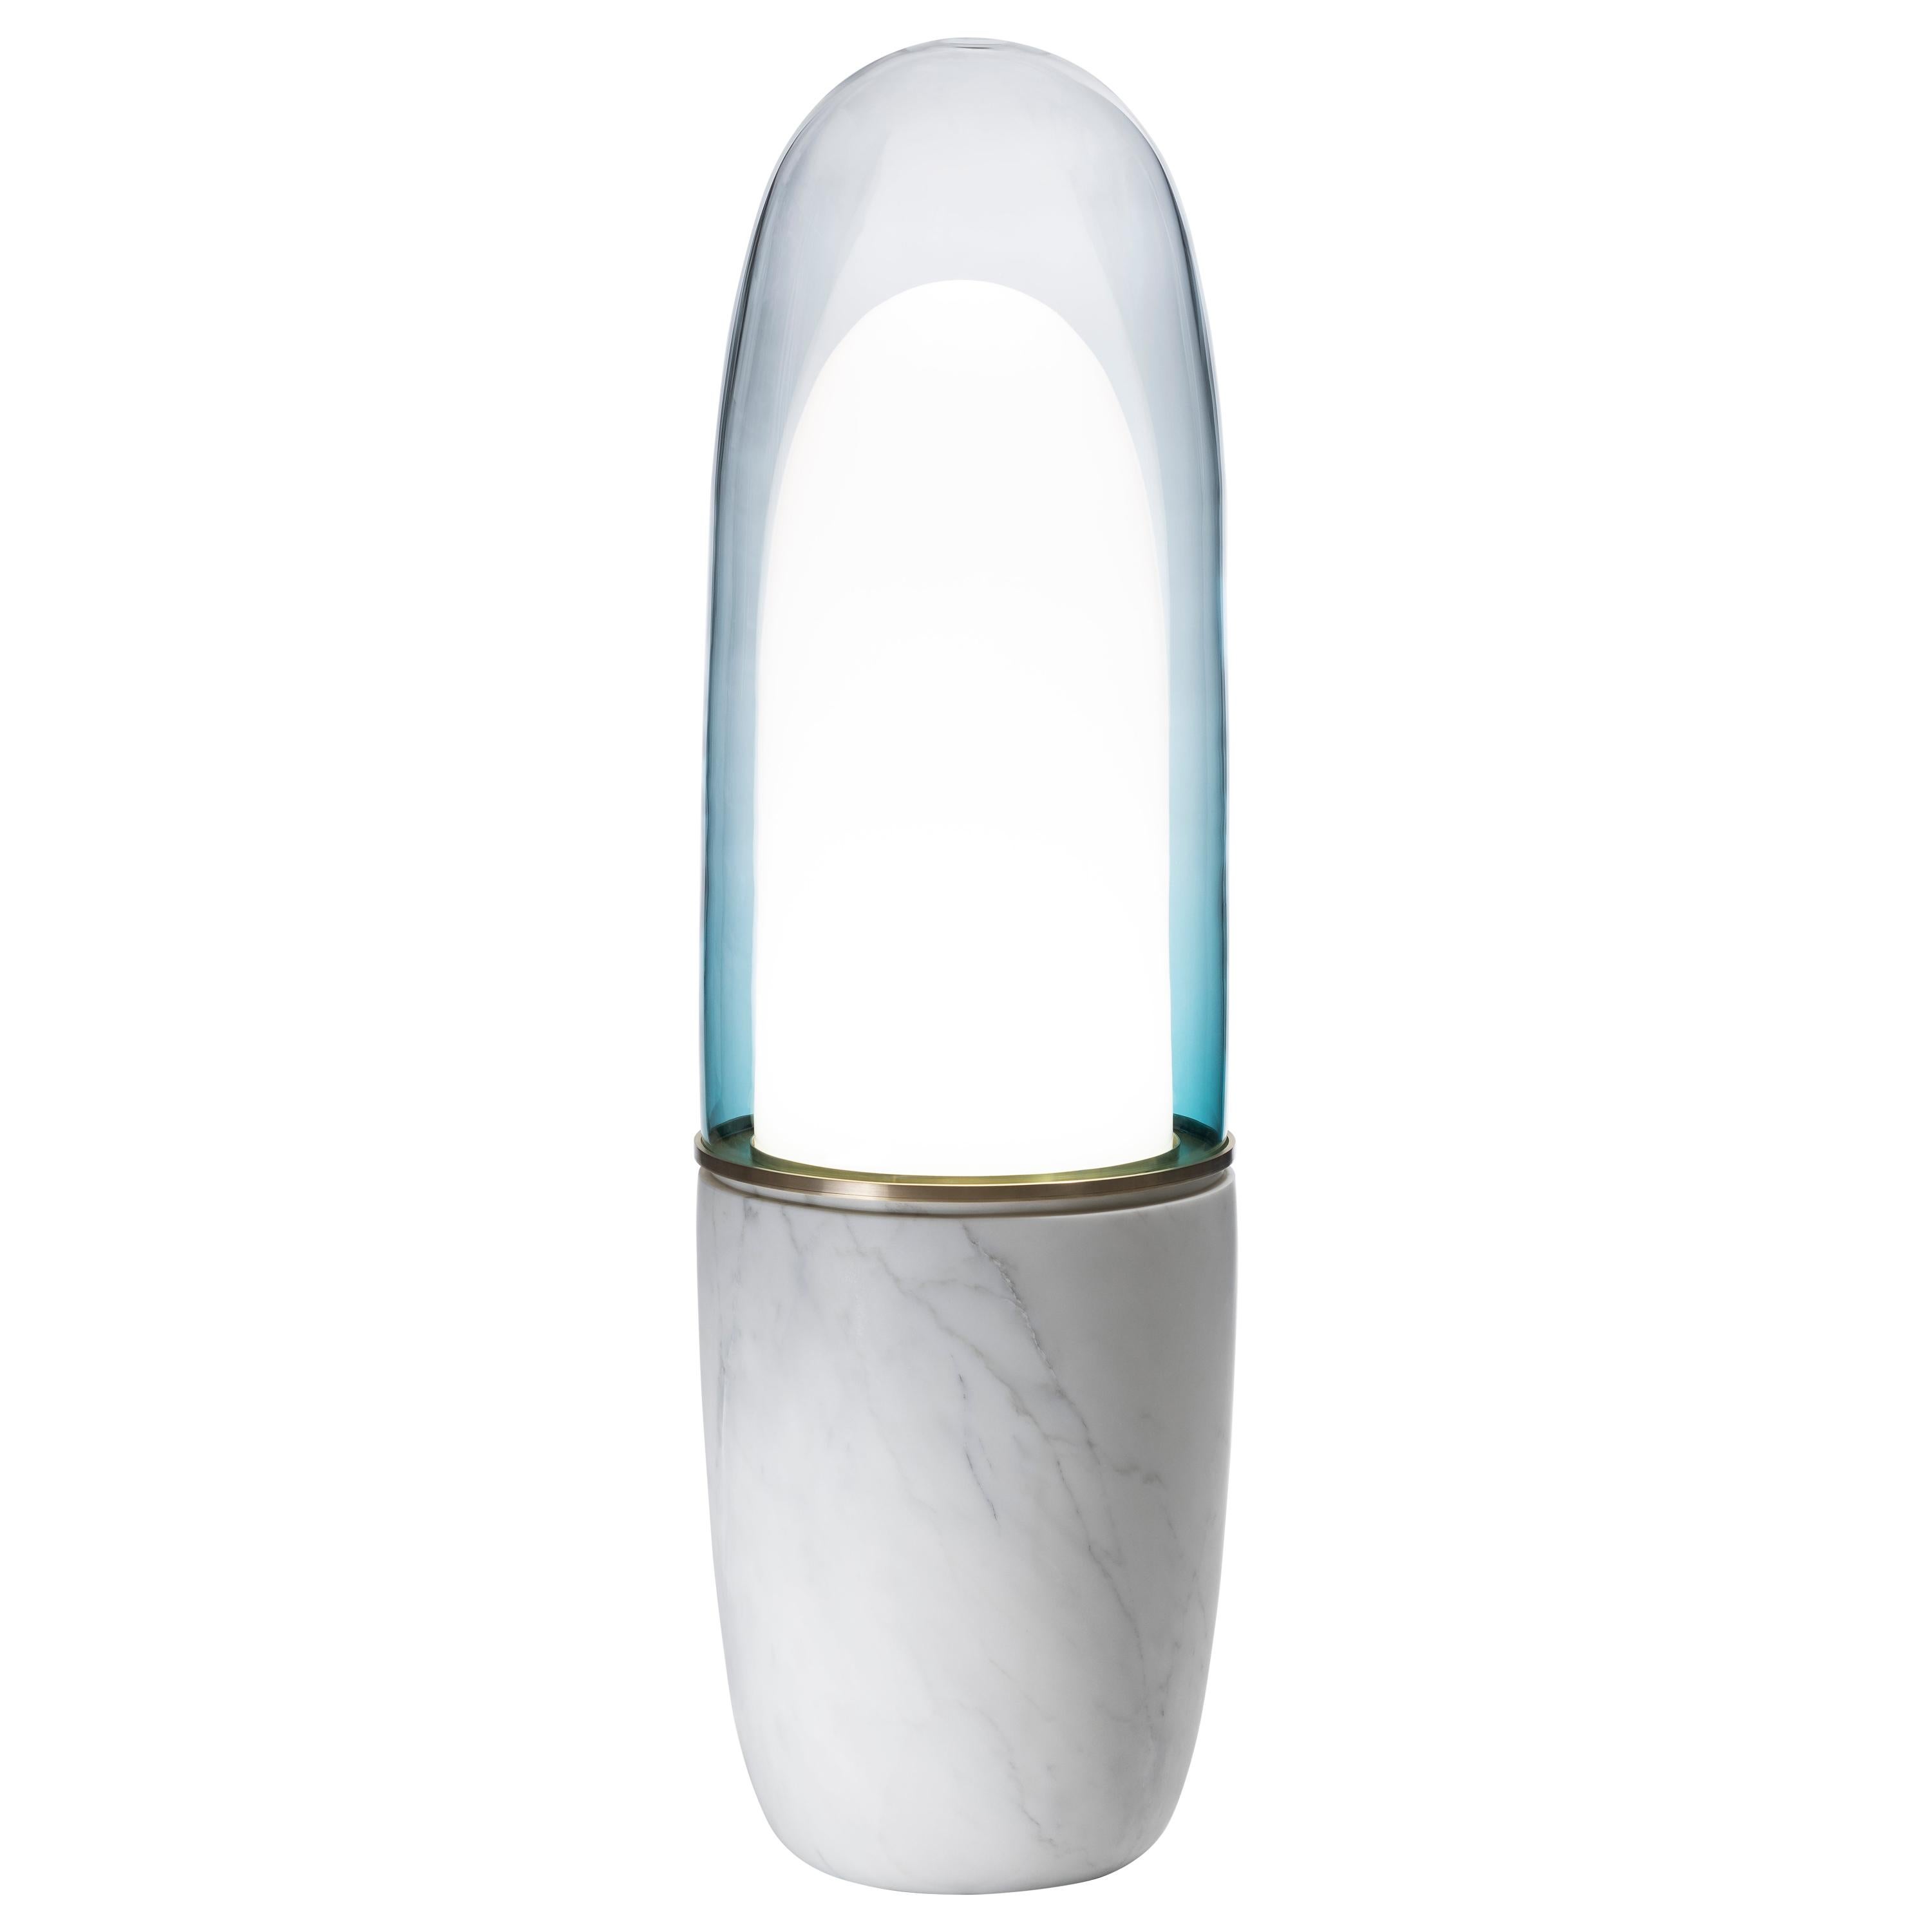 Ini Archibong, "Obelisk", Floor Light, Lamp, Marble, Glass, 2019